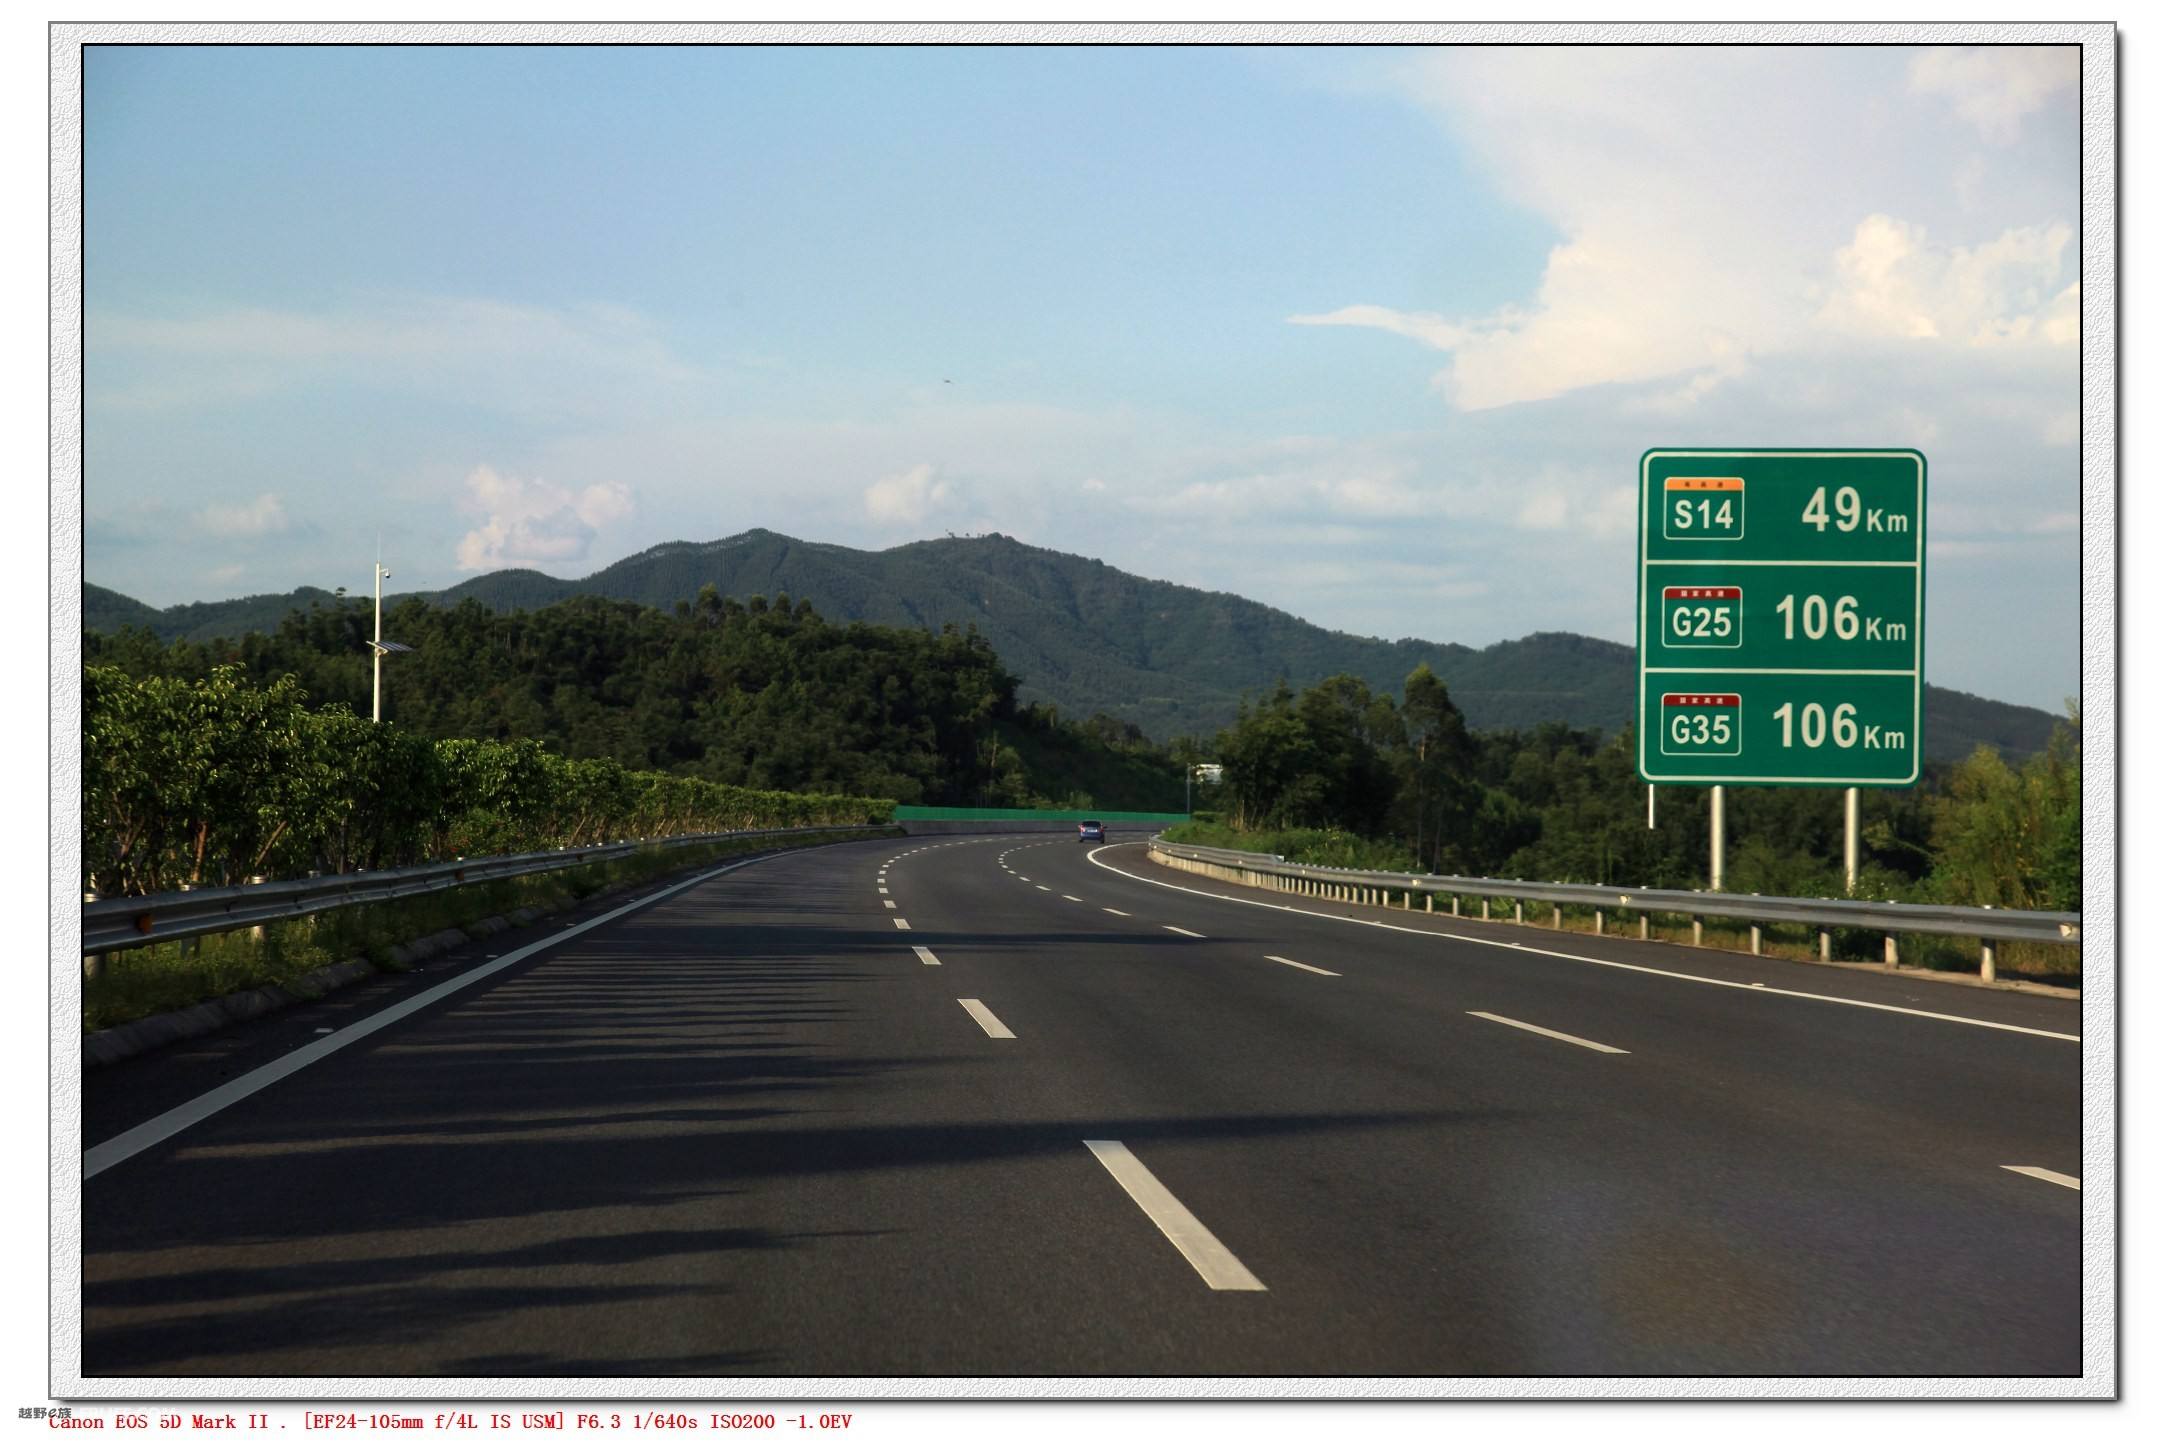 广河高速路线图:广河高速全称"广州-河源高速公路"